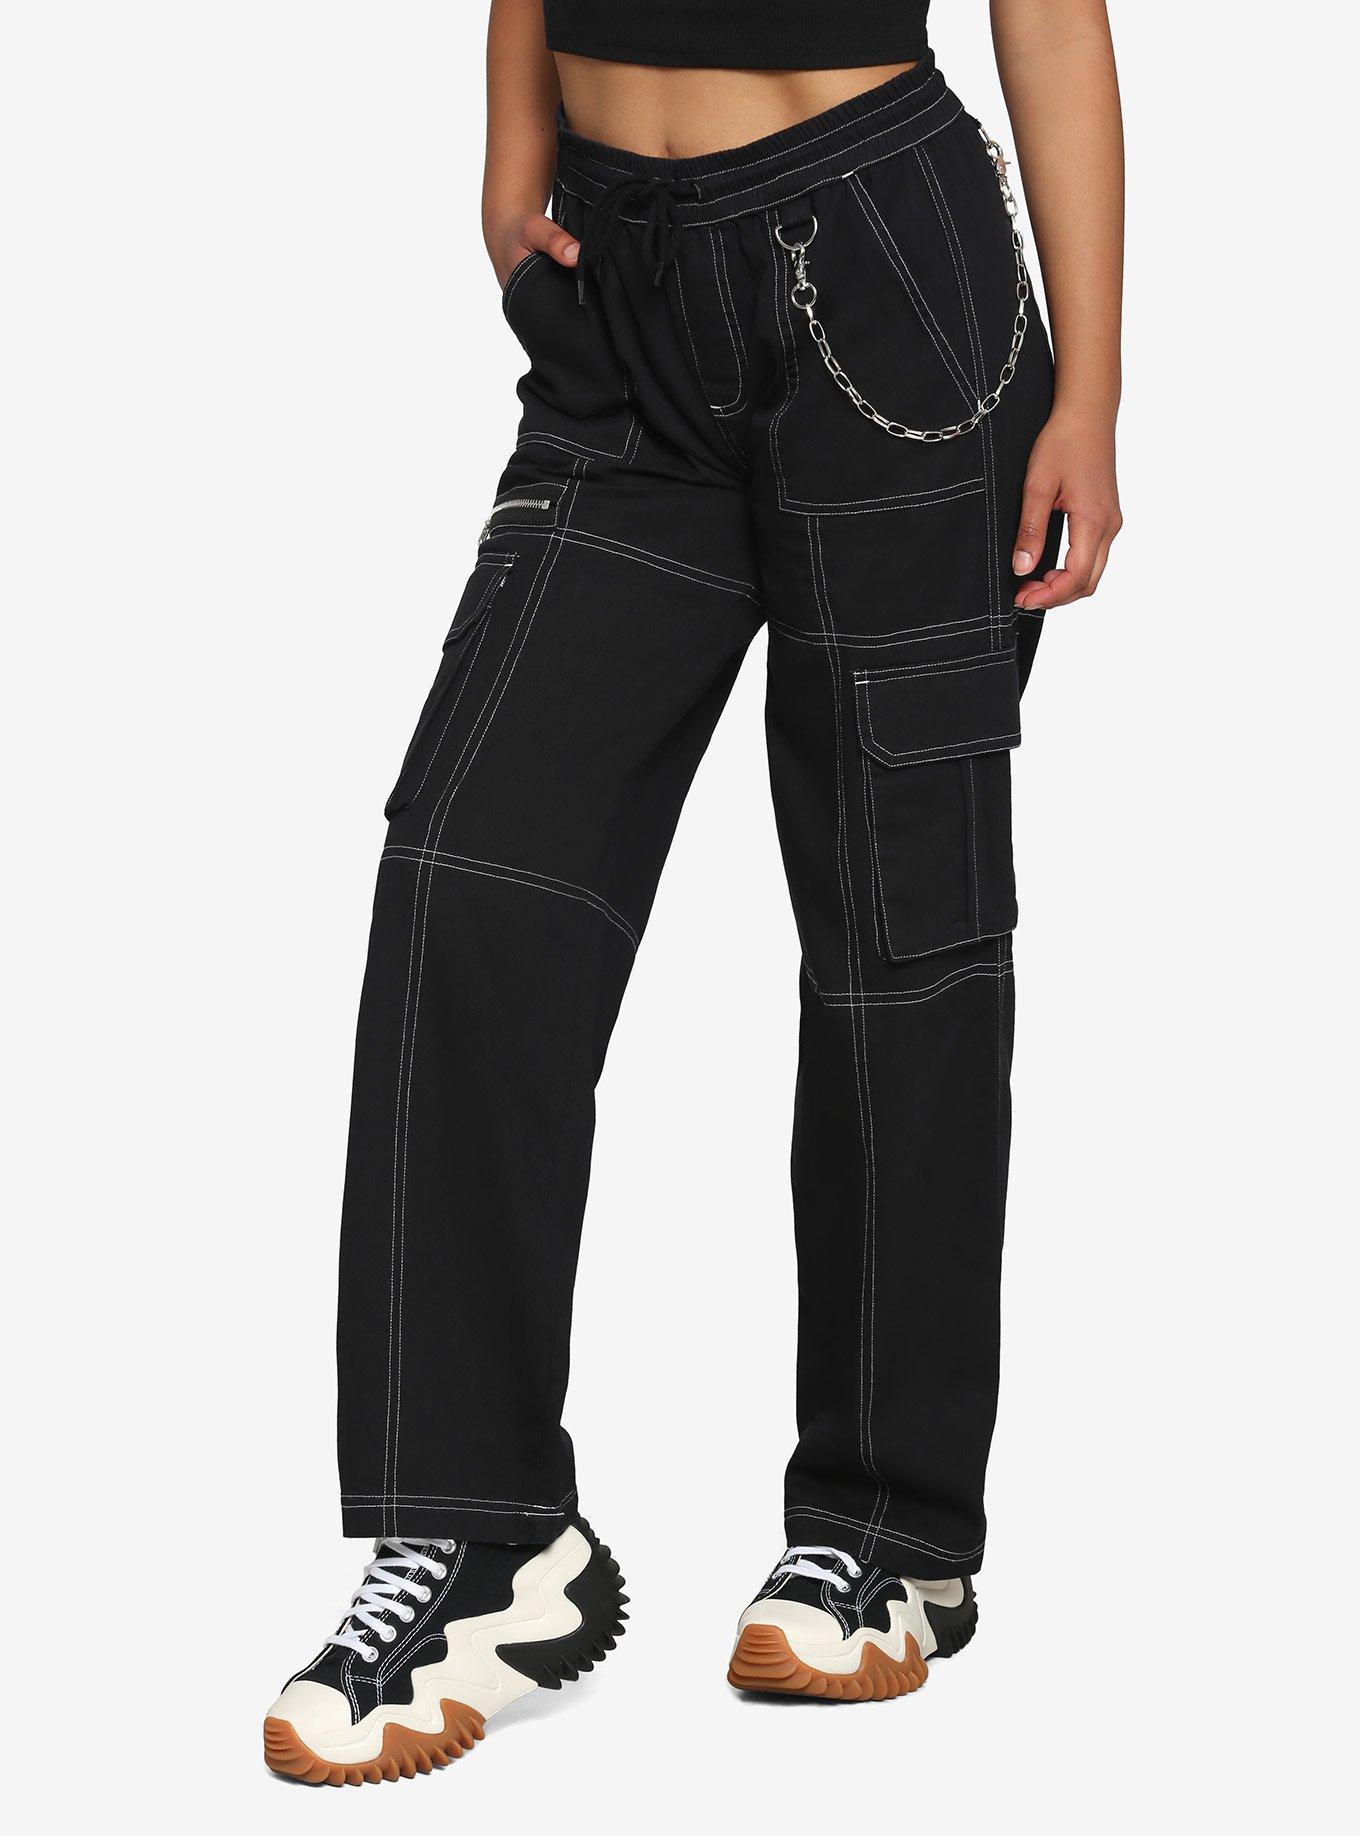 Black & White Stitch Chain Carpenter Pants